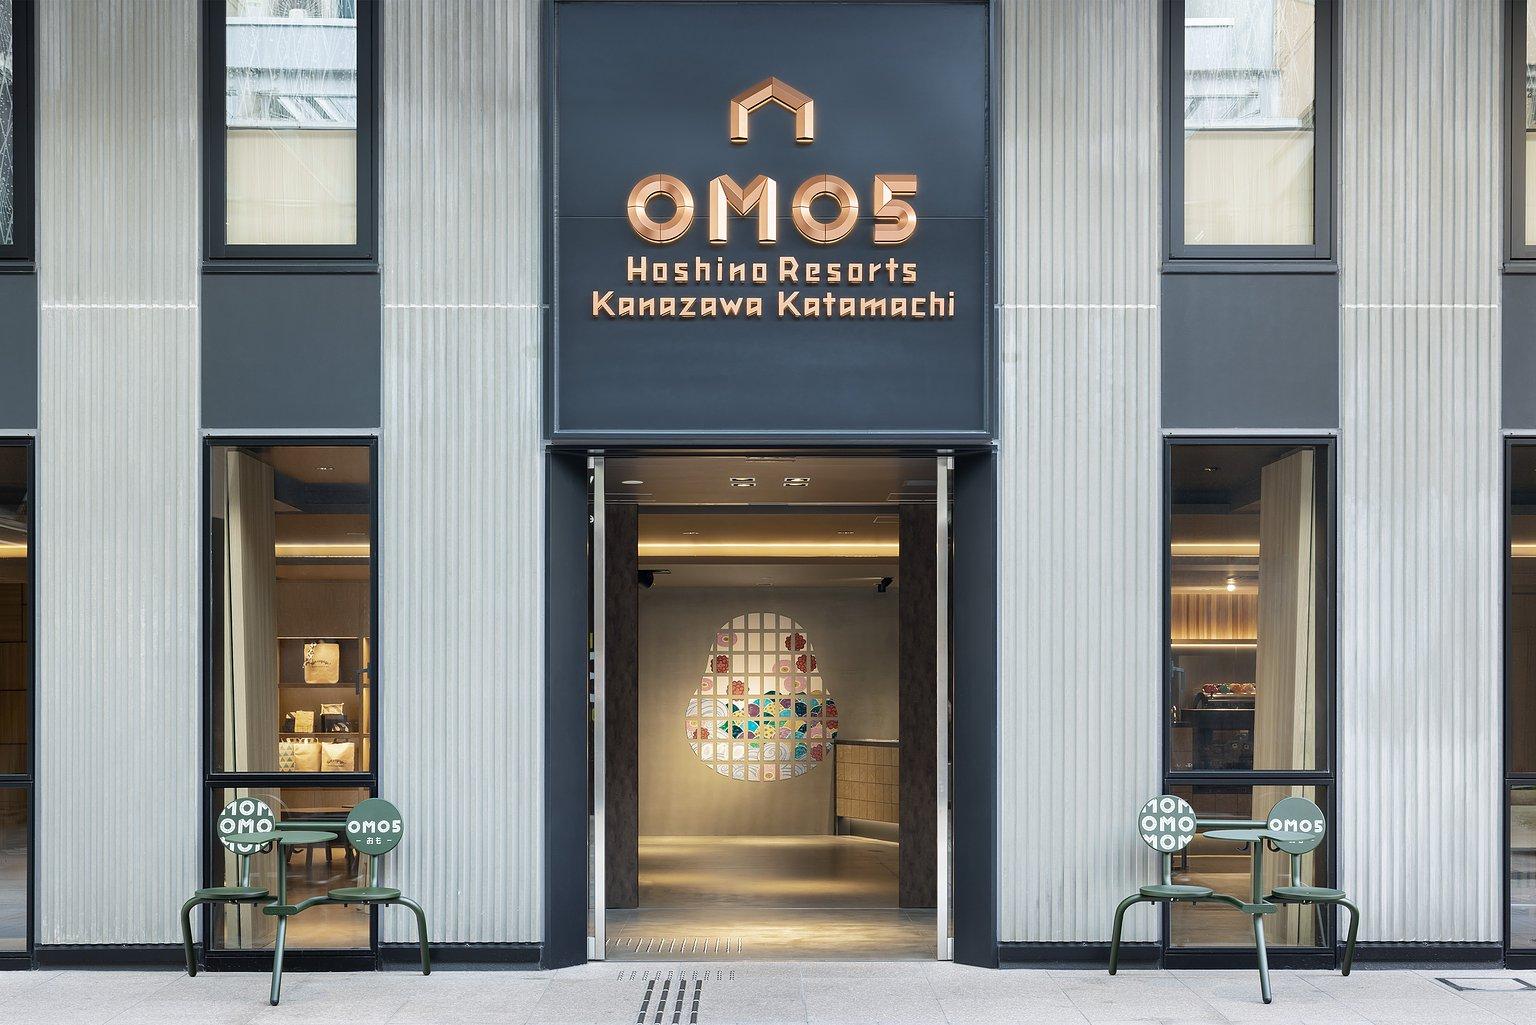 OMO5 Kanazawa Katamachi by Hoshino Resorts